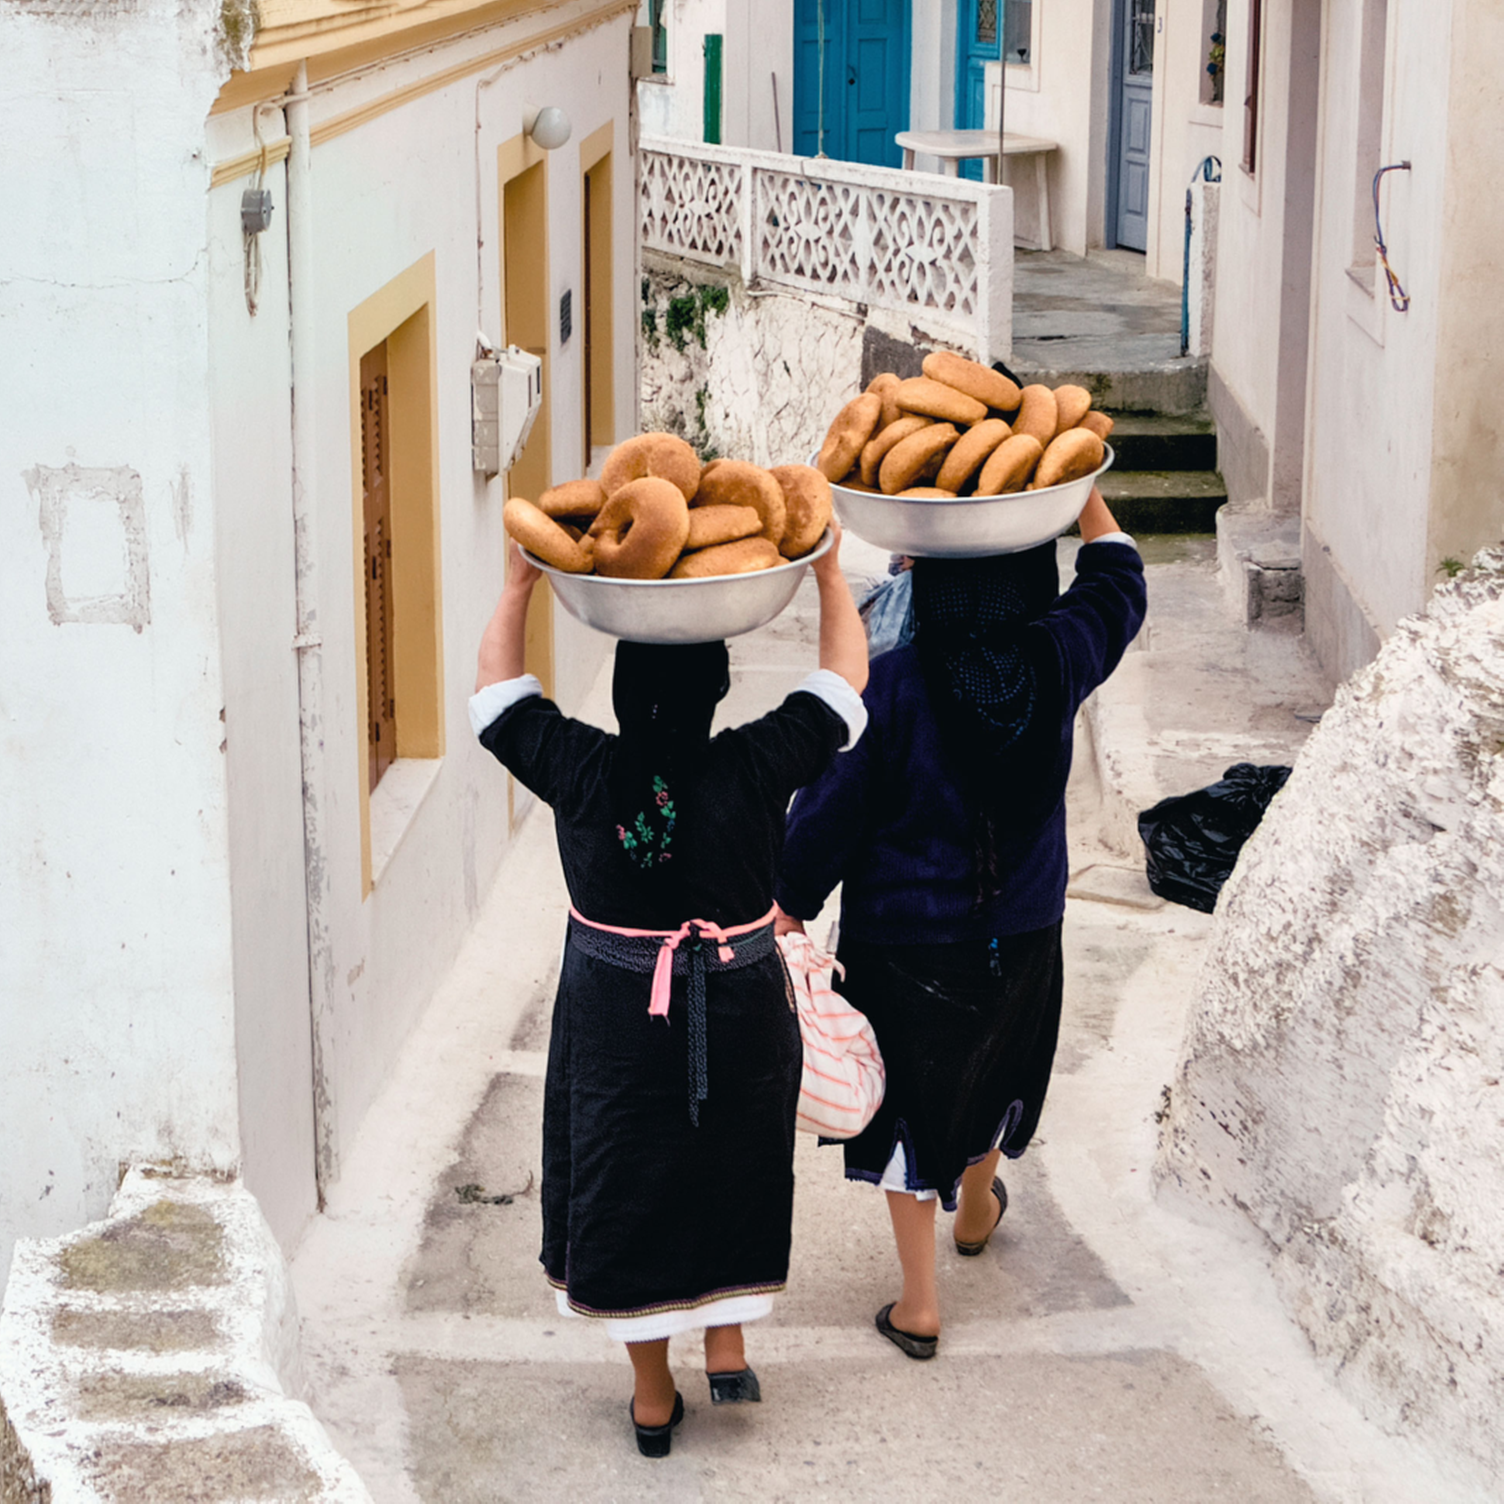 Mujeres caminan llevando cestas de pan sobre sus cabezas en la víspera de Pascua